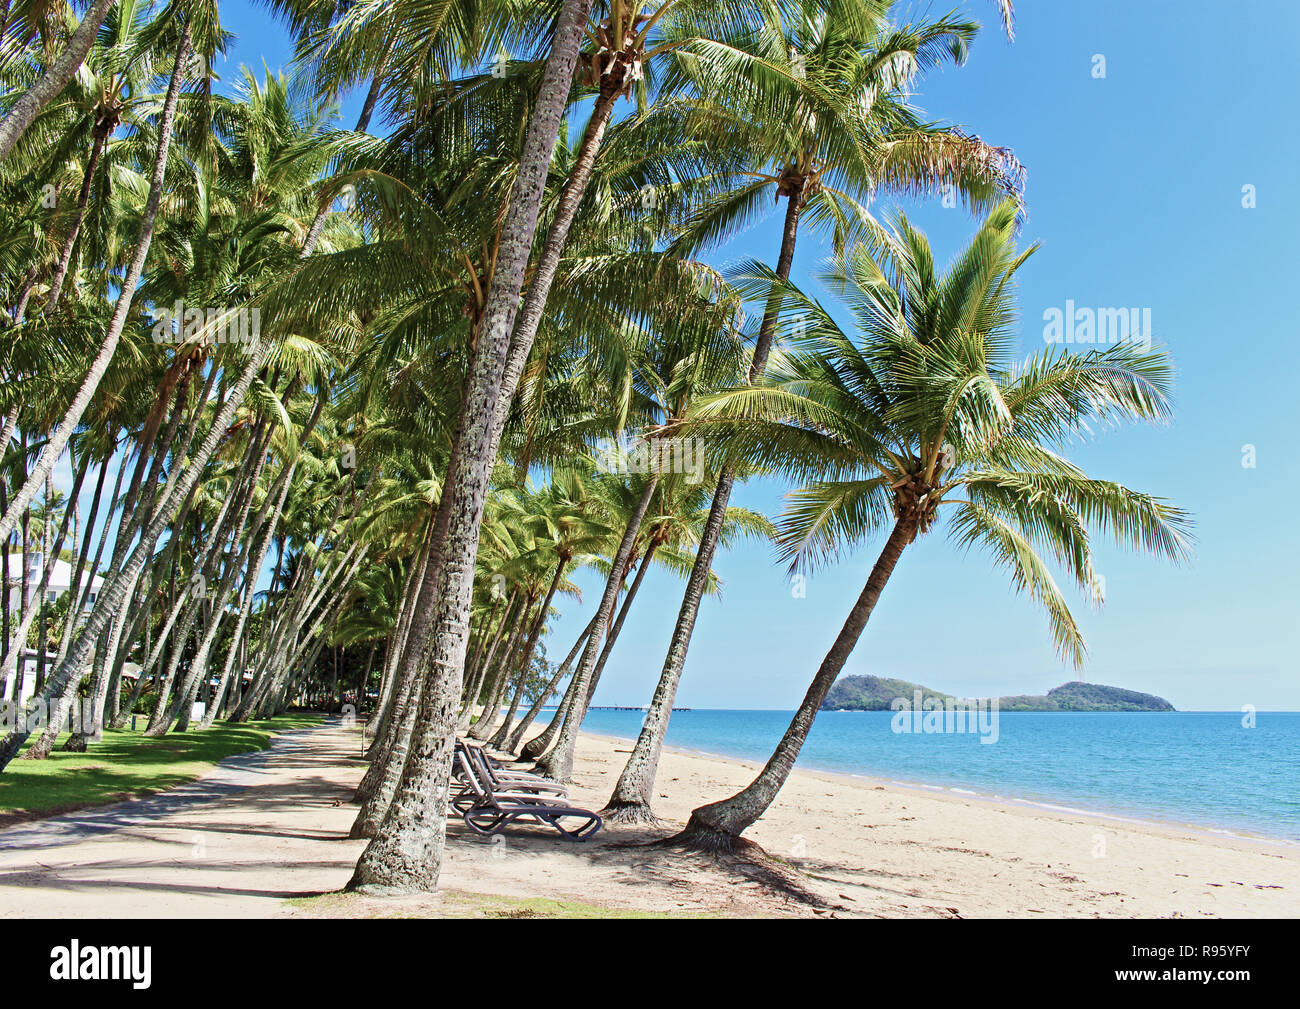 La plus belle plage de sable, bordée de palmiers, préservée et plage peu fréquentée à Cairns... Palm Cove Beach en Far North Queensland Australie Banque D'Images